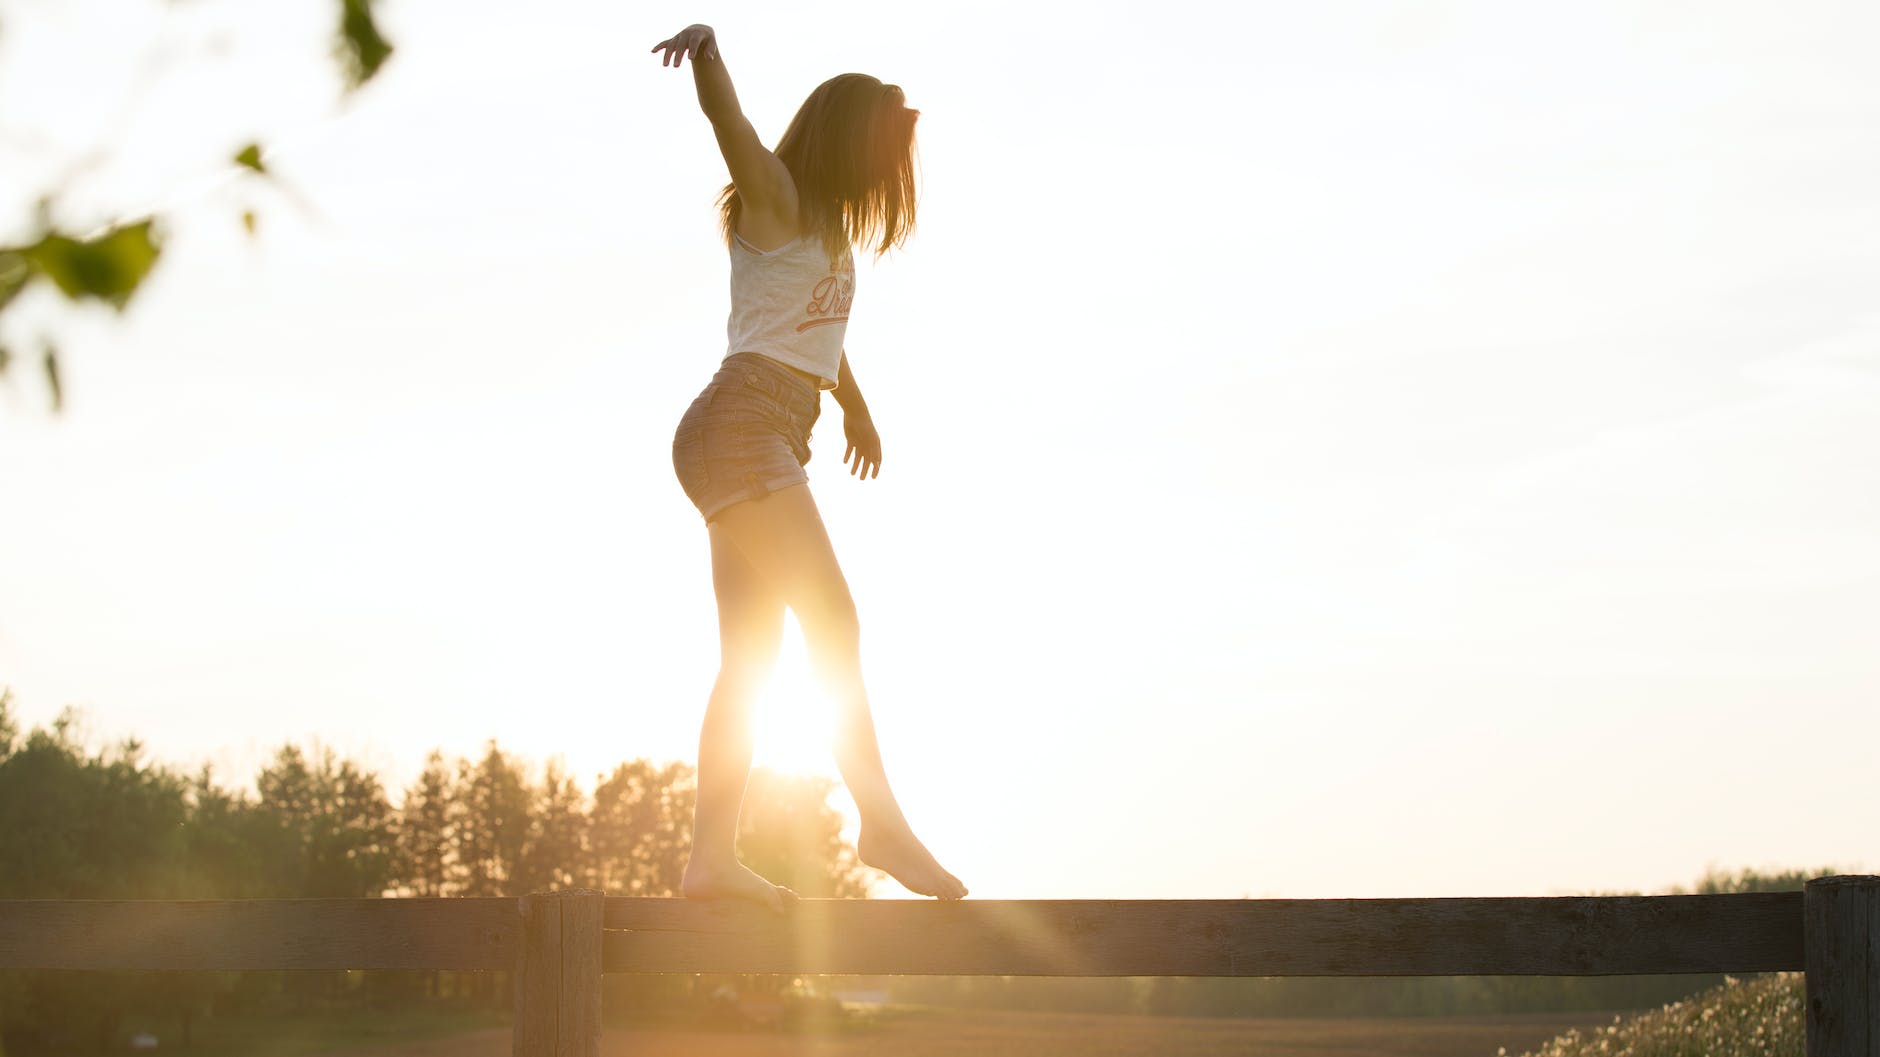 Junge Frau läuft auf einem Zaun und hält das Gleichgewicht  